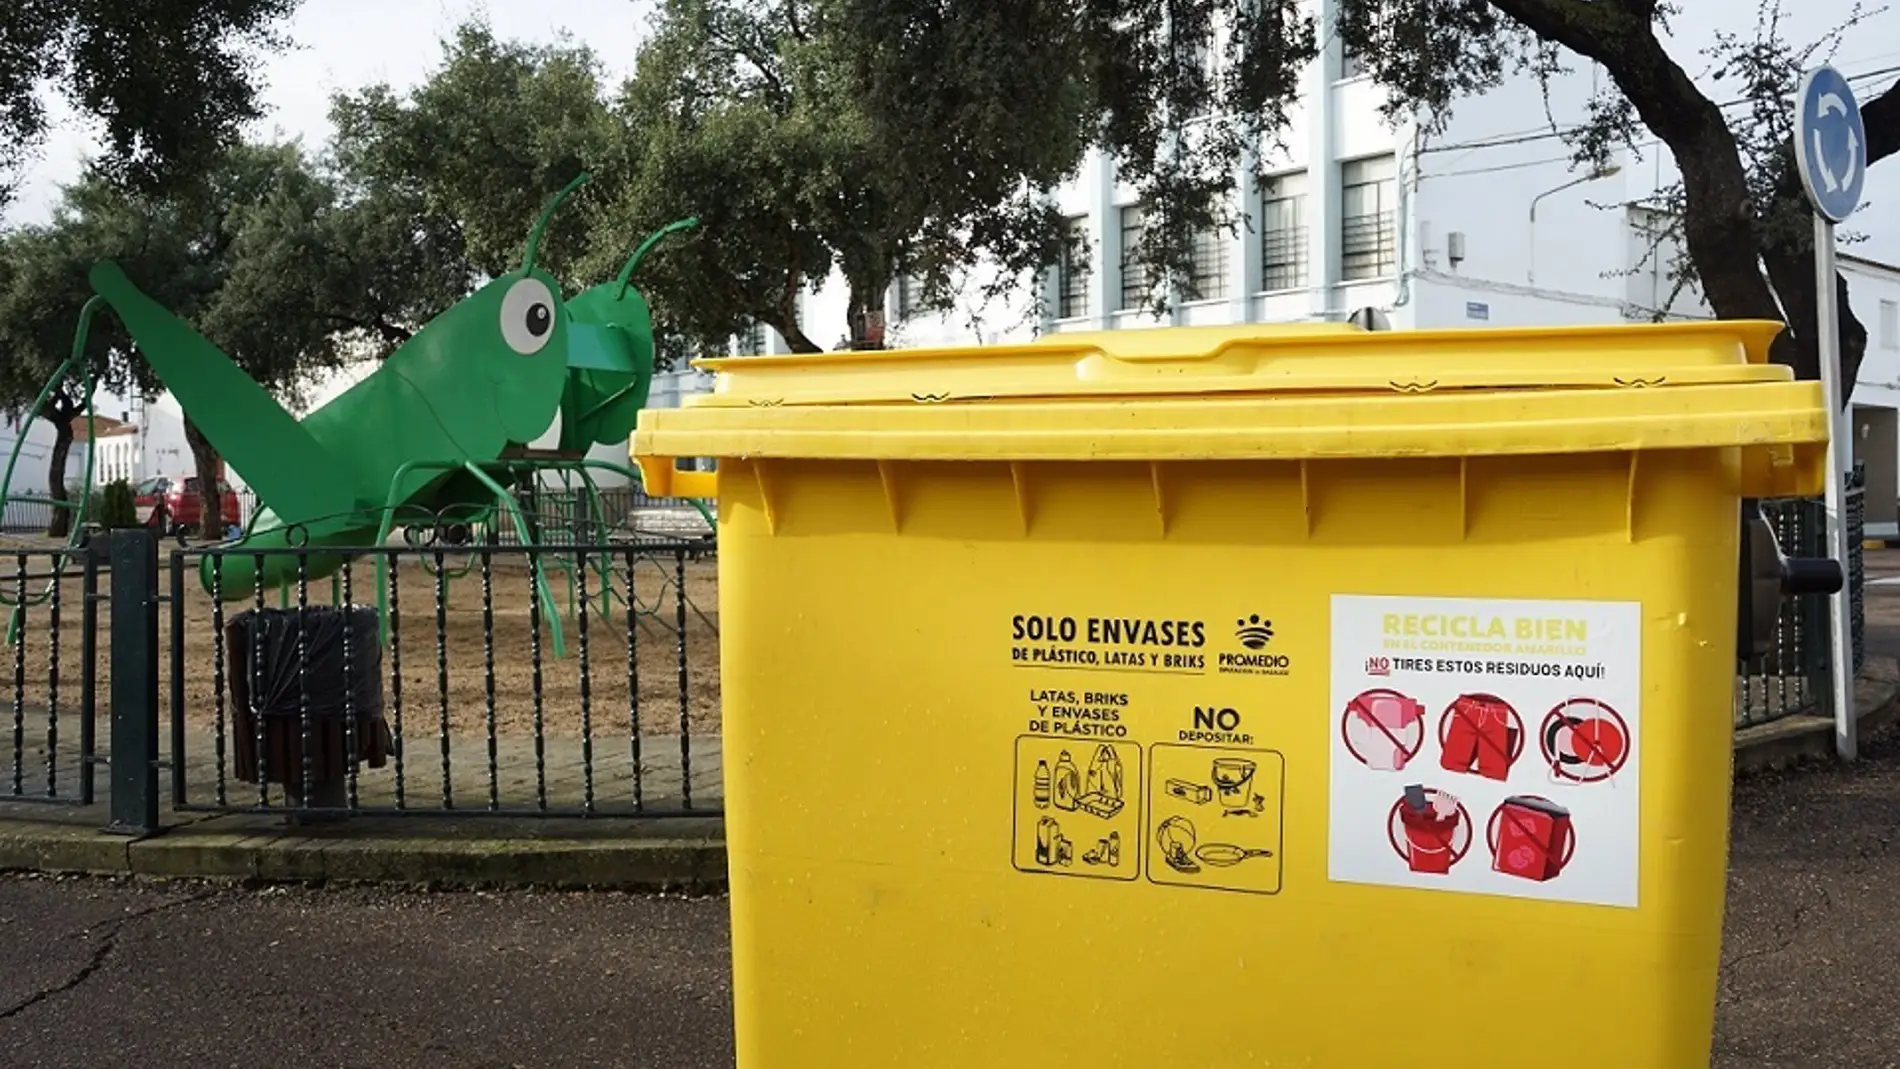 Promedio instala pegatinas en los contenedores amarillos para informar sobre los residuos que no se pueden depositar en ellos